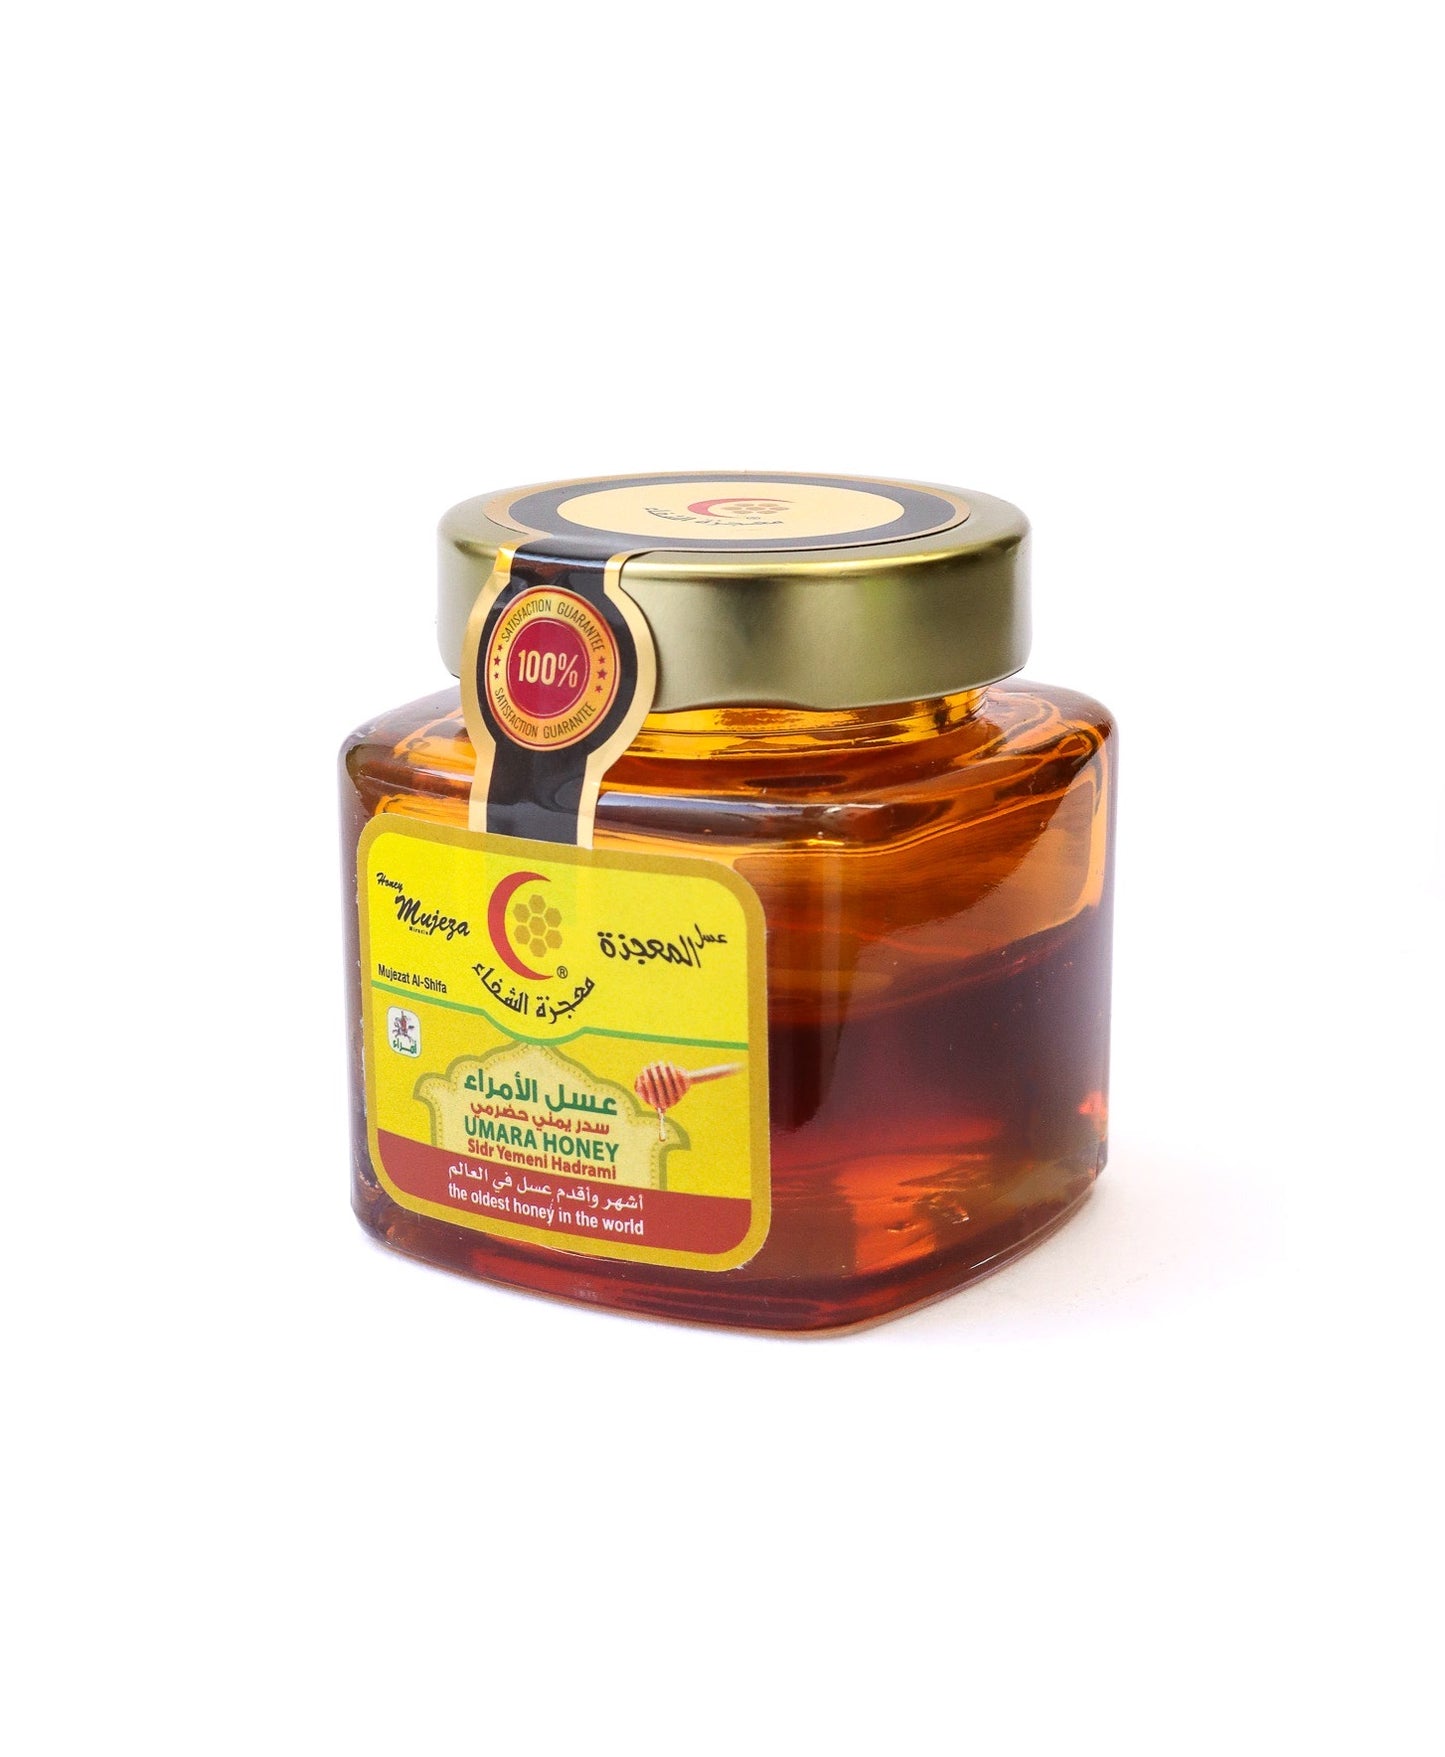 Yemeni Umara Sidr Honey (Hadrami) (250g) - Mujeza Honey